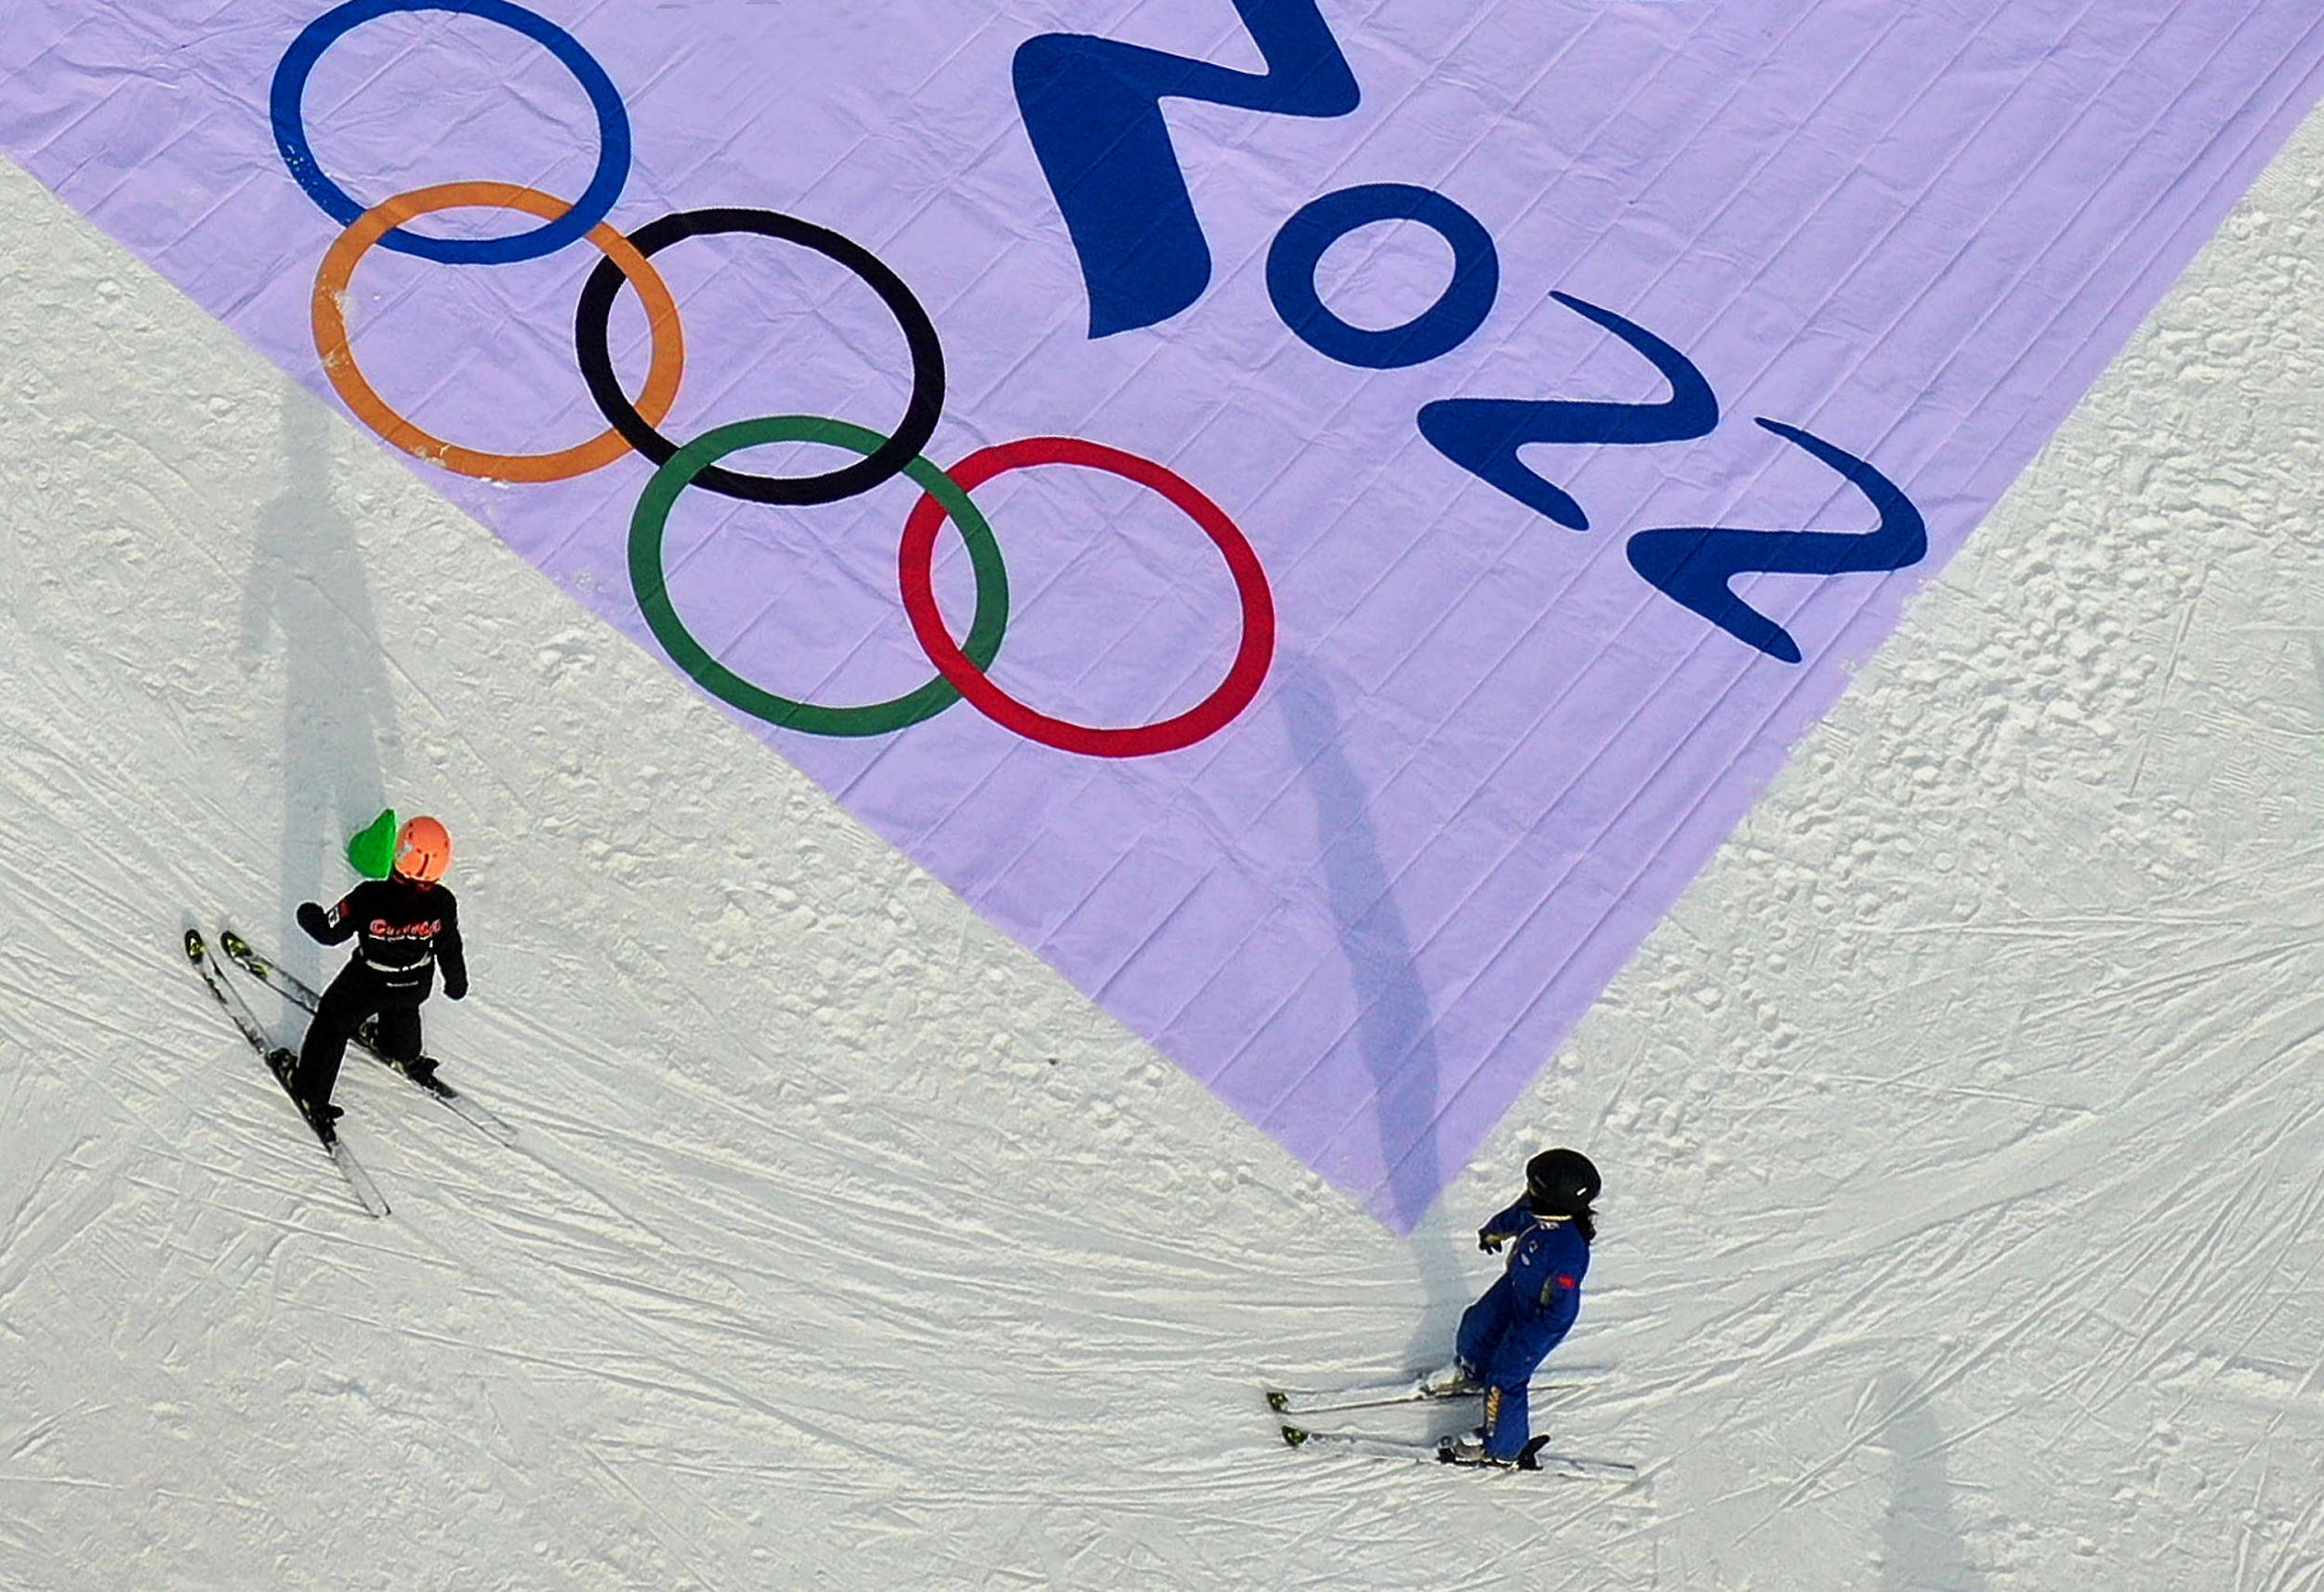 北京冬奥,中国和世界冰雪运动的分界线